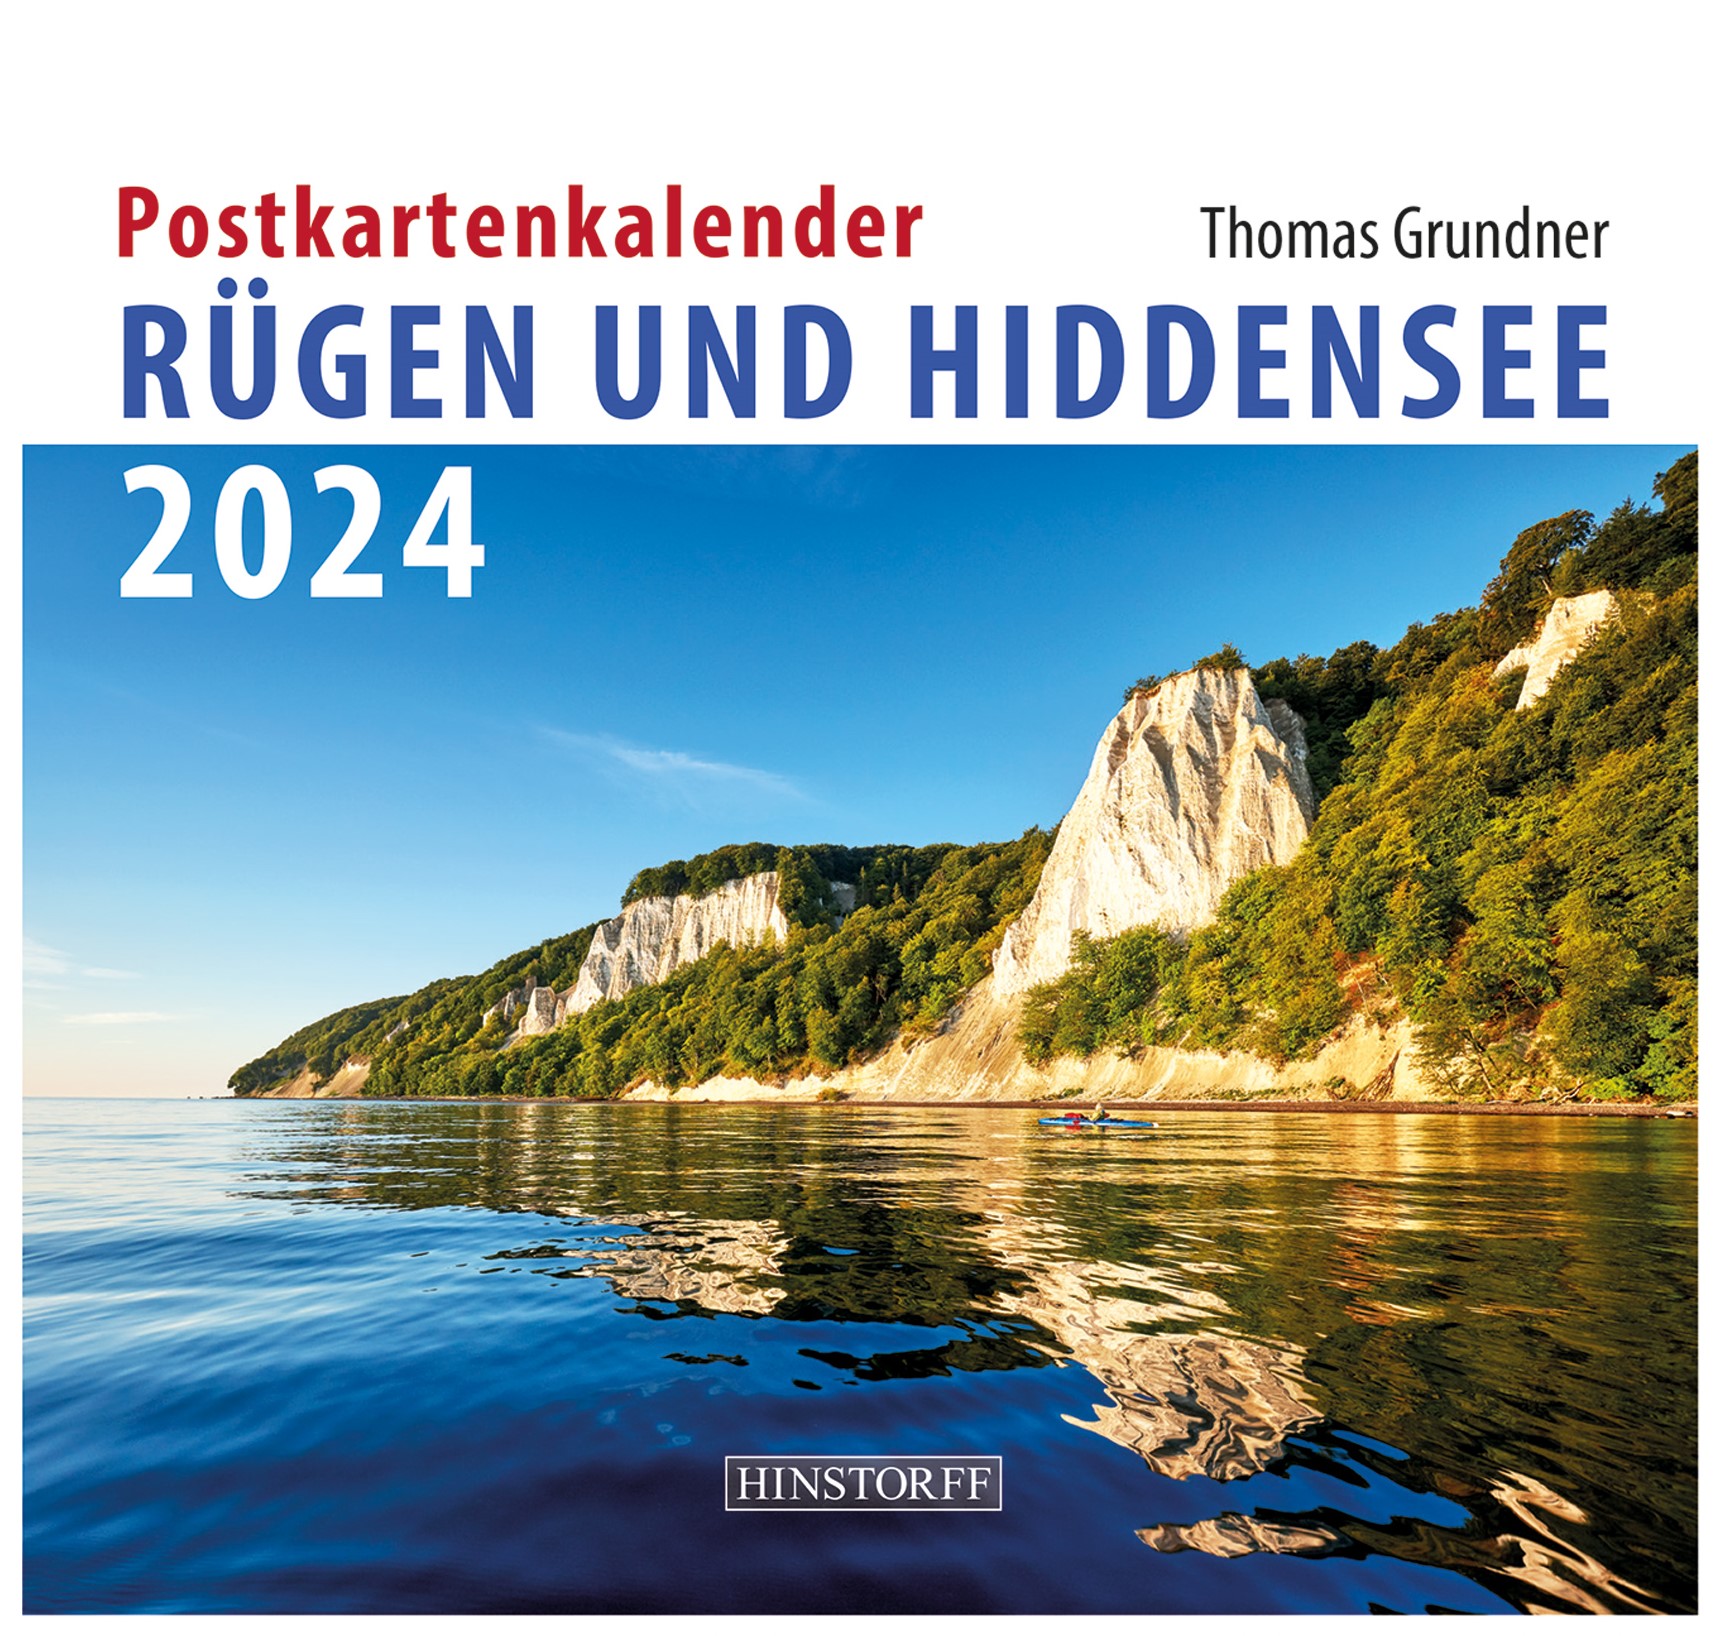 Postkartenkalender Rügen und Hiddensee 2024